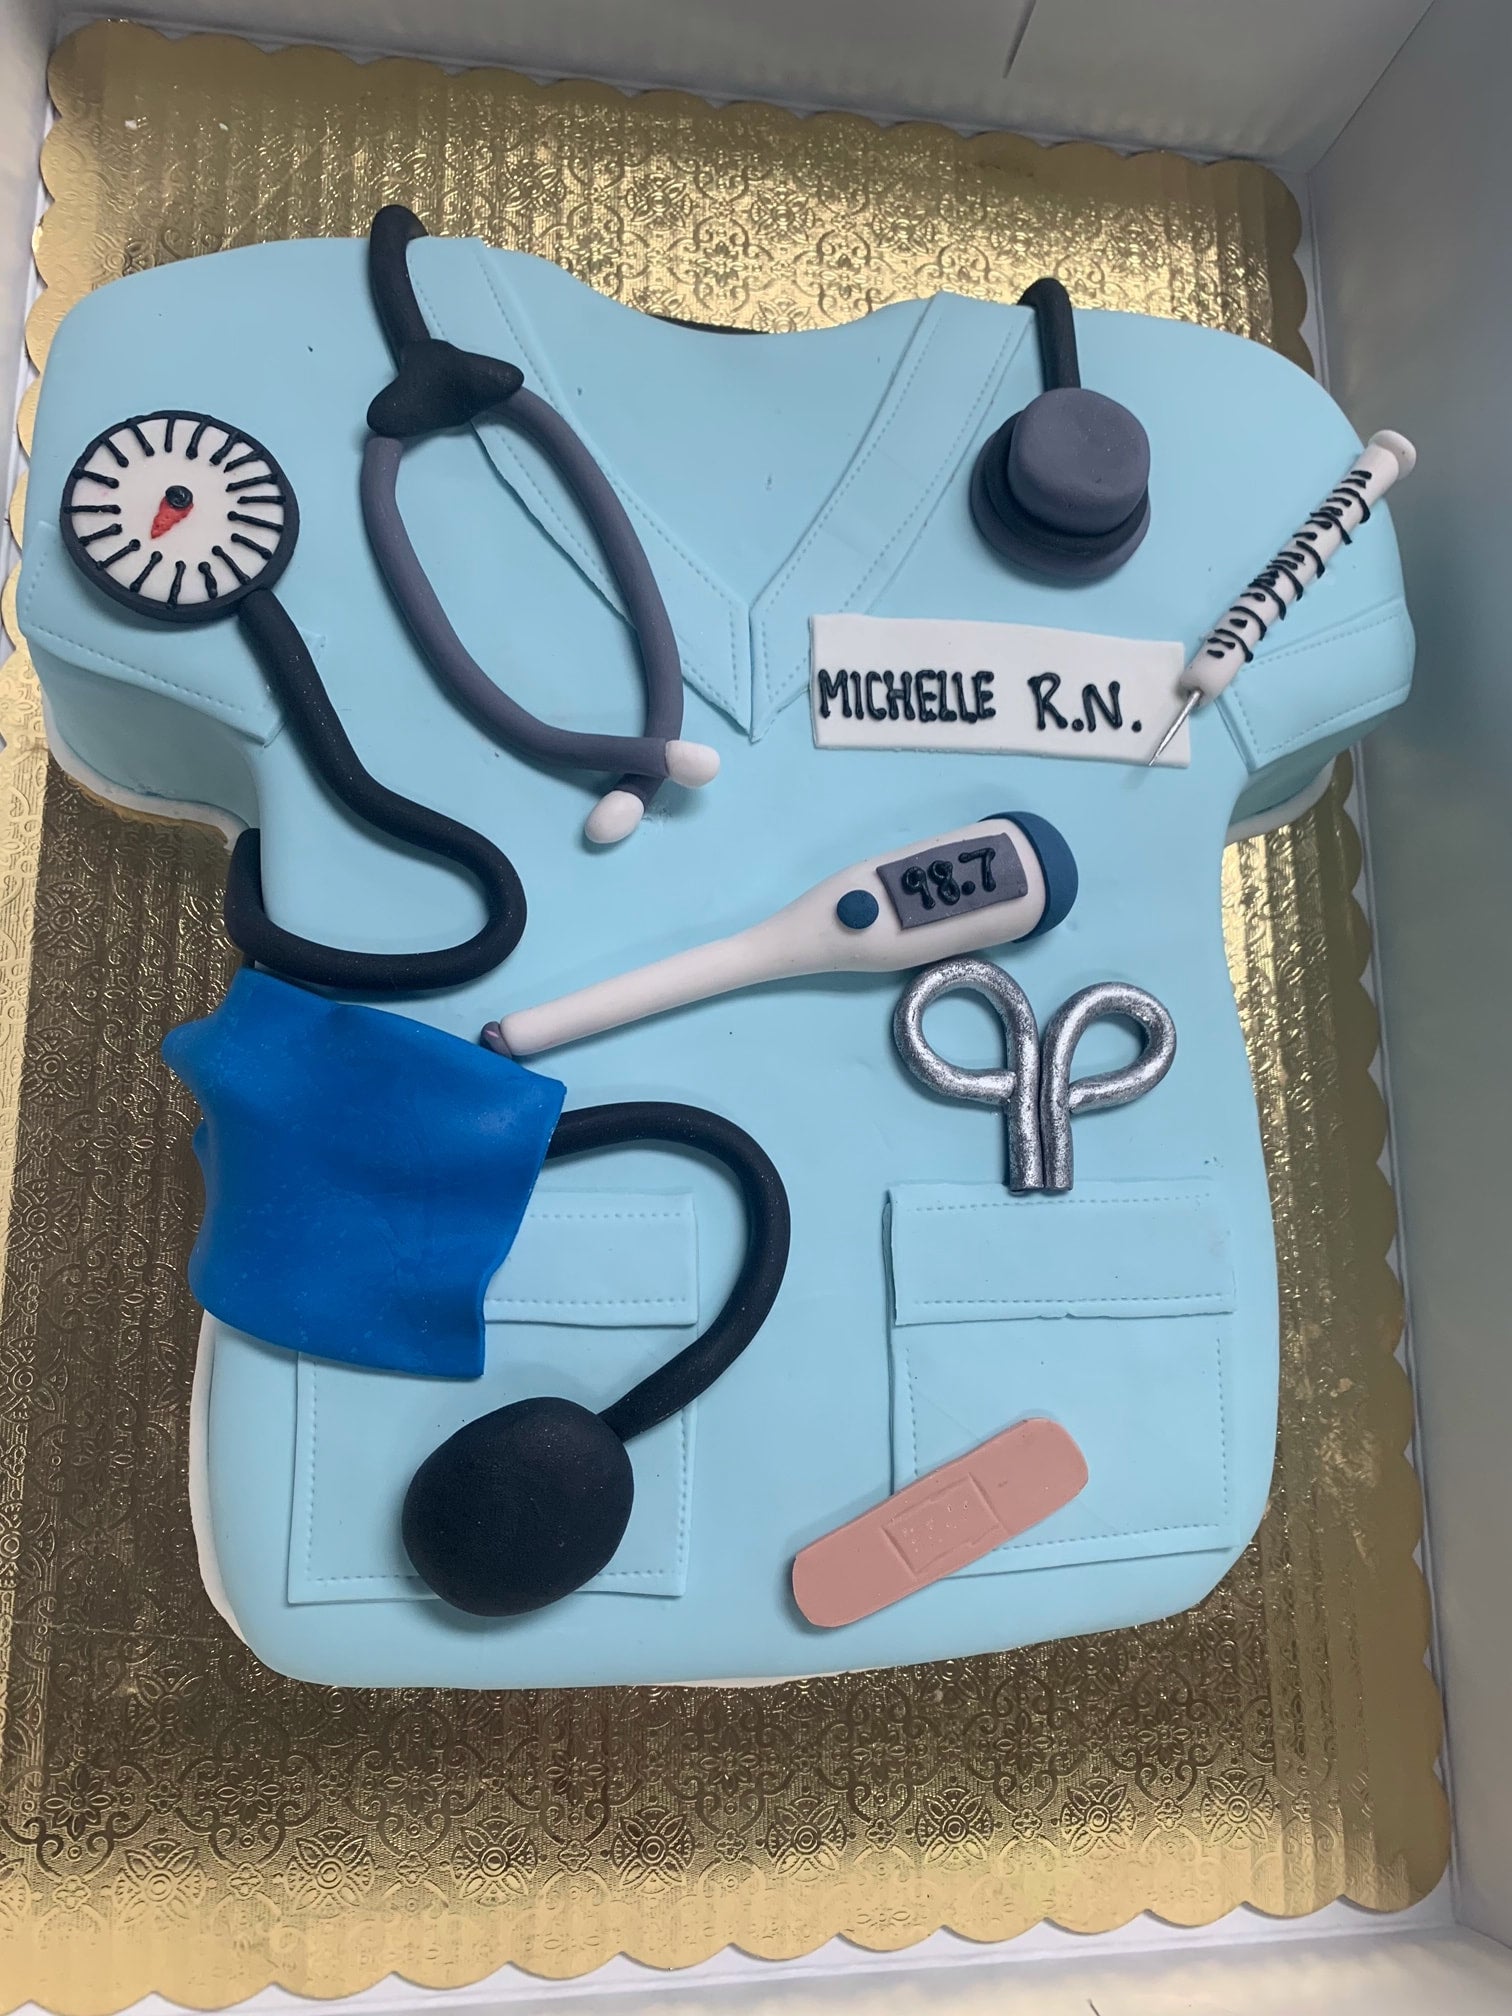 Stethoscope Cake | Nursing cake, Medical cake, Cake decorating frosting